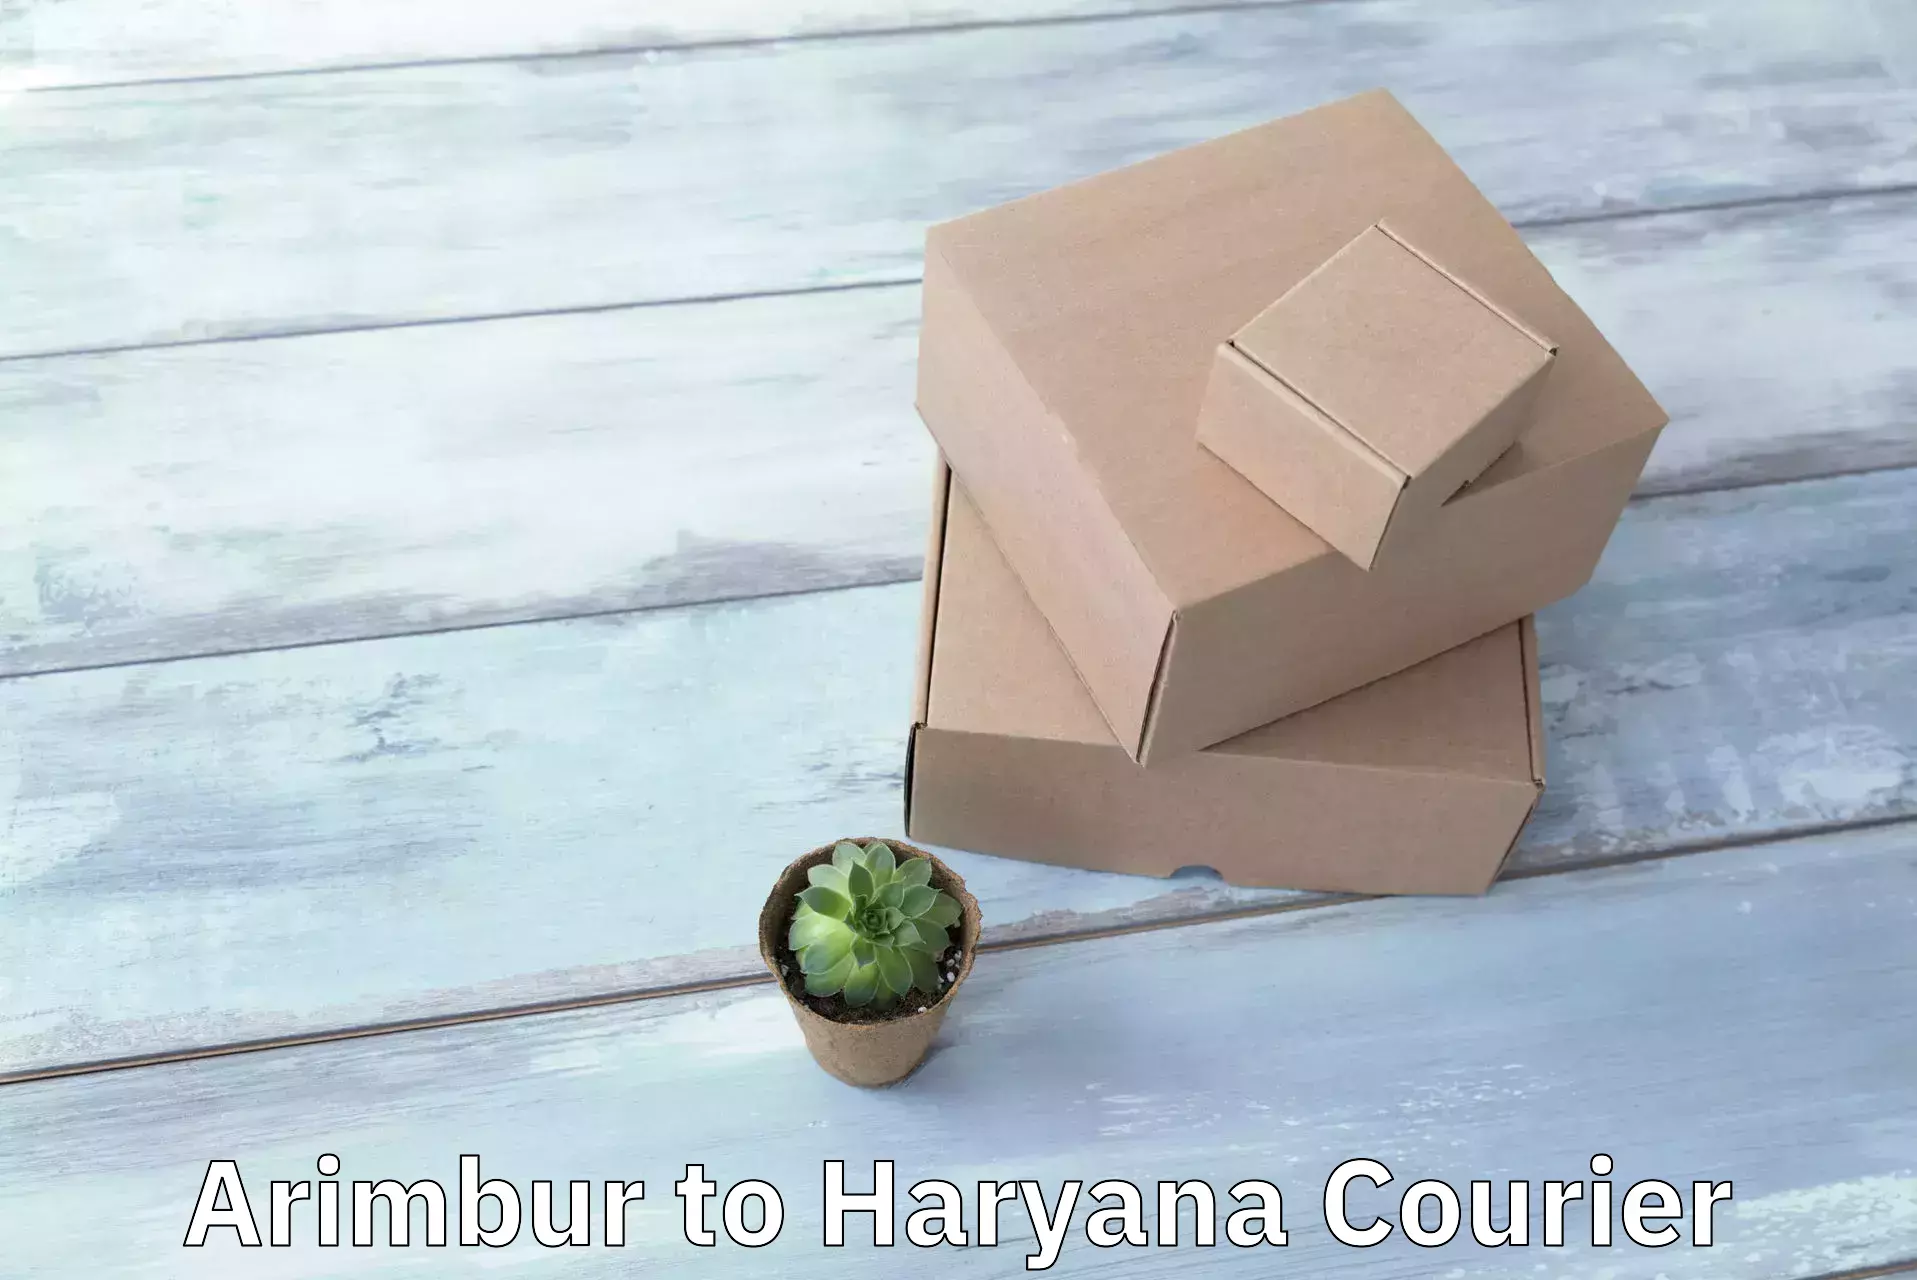 Rapid shipping services Arimbur to Haryana